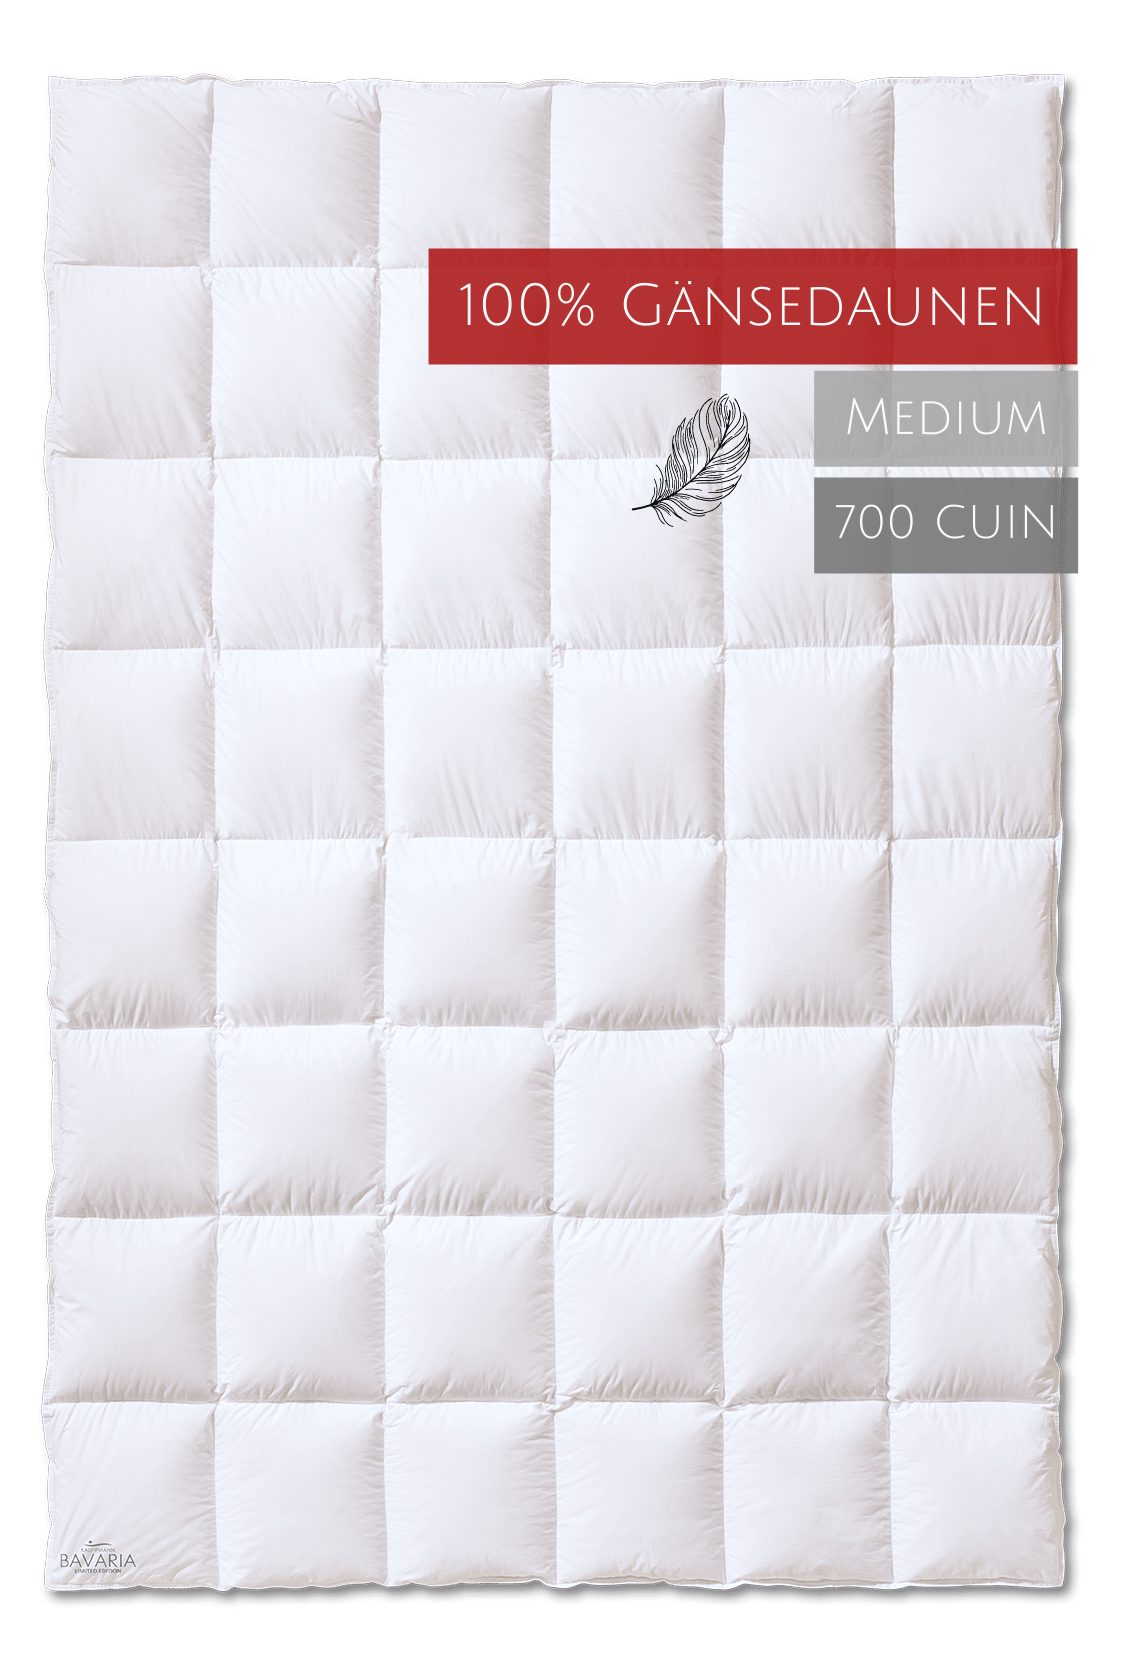 Gänsedaunenbettdecke, Bavaria Wärmestufe "medium", Kauffmann, Füllung: 100% Gänsedaunen, Bezug: 100% Baumwolle, allergikerfreundlich